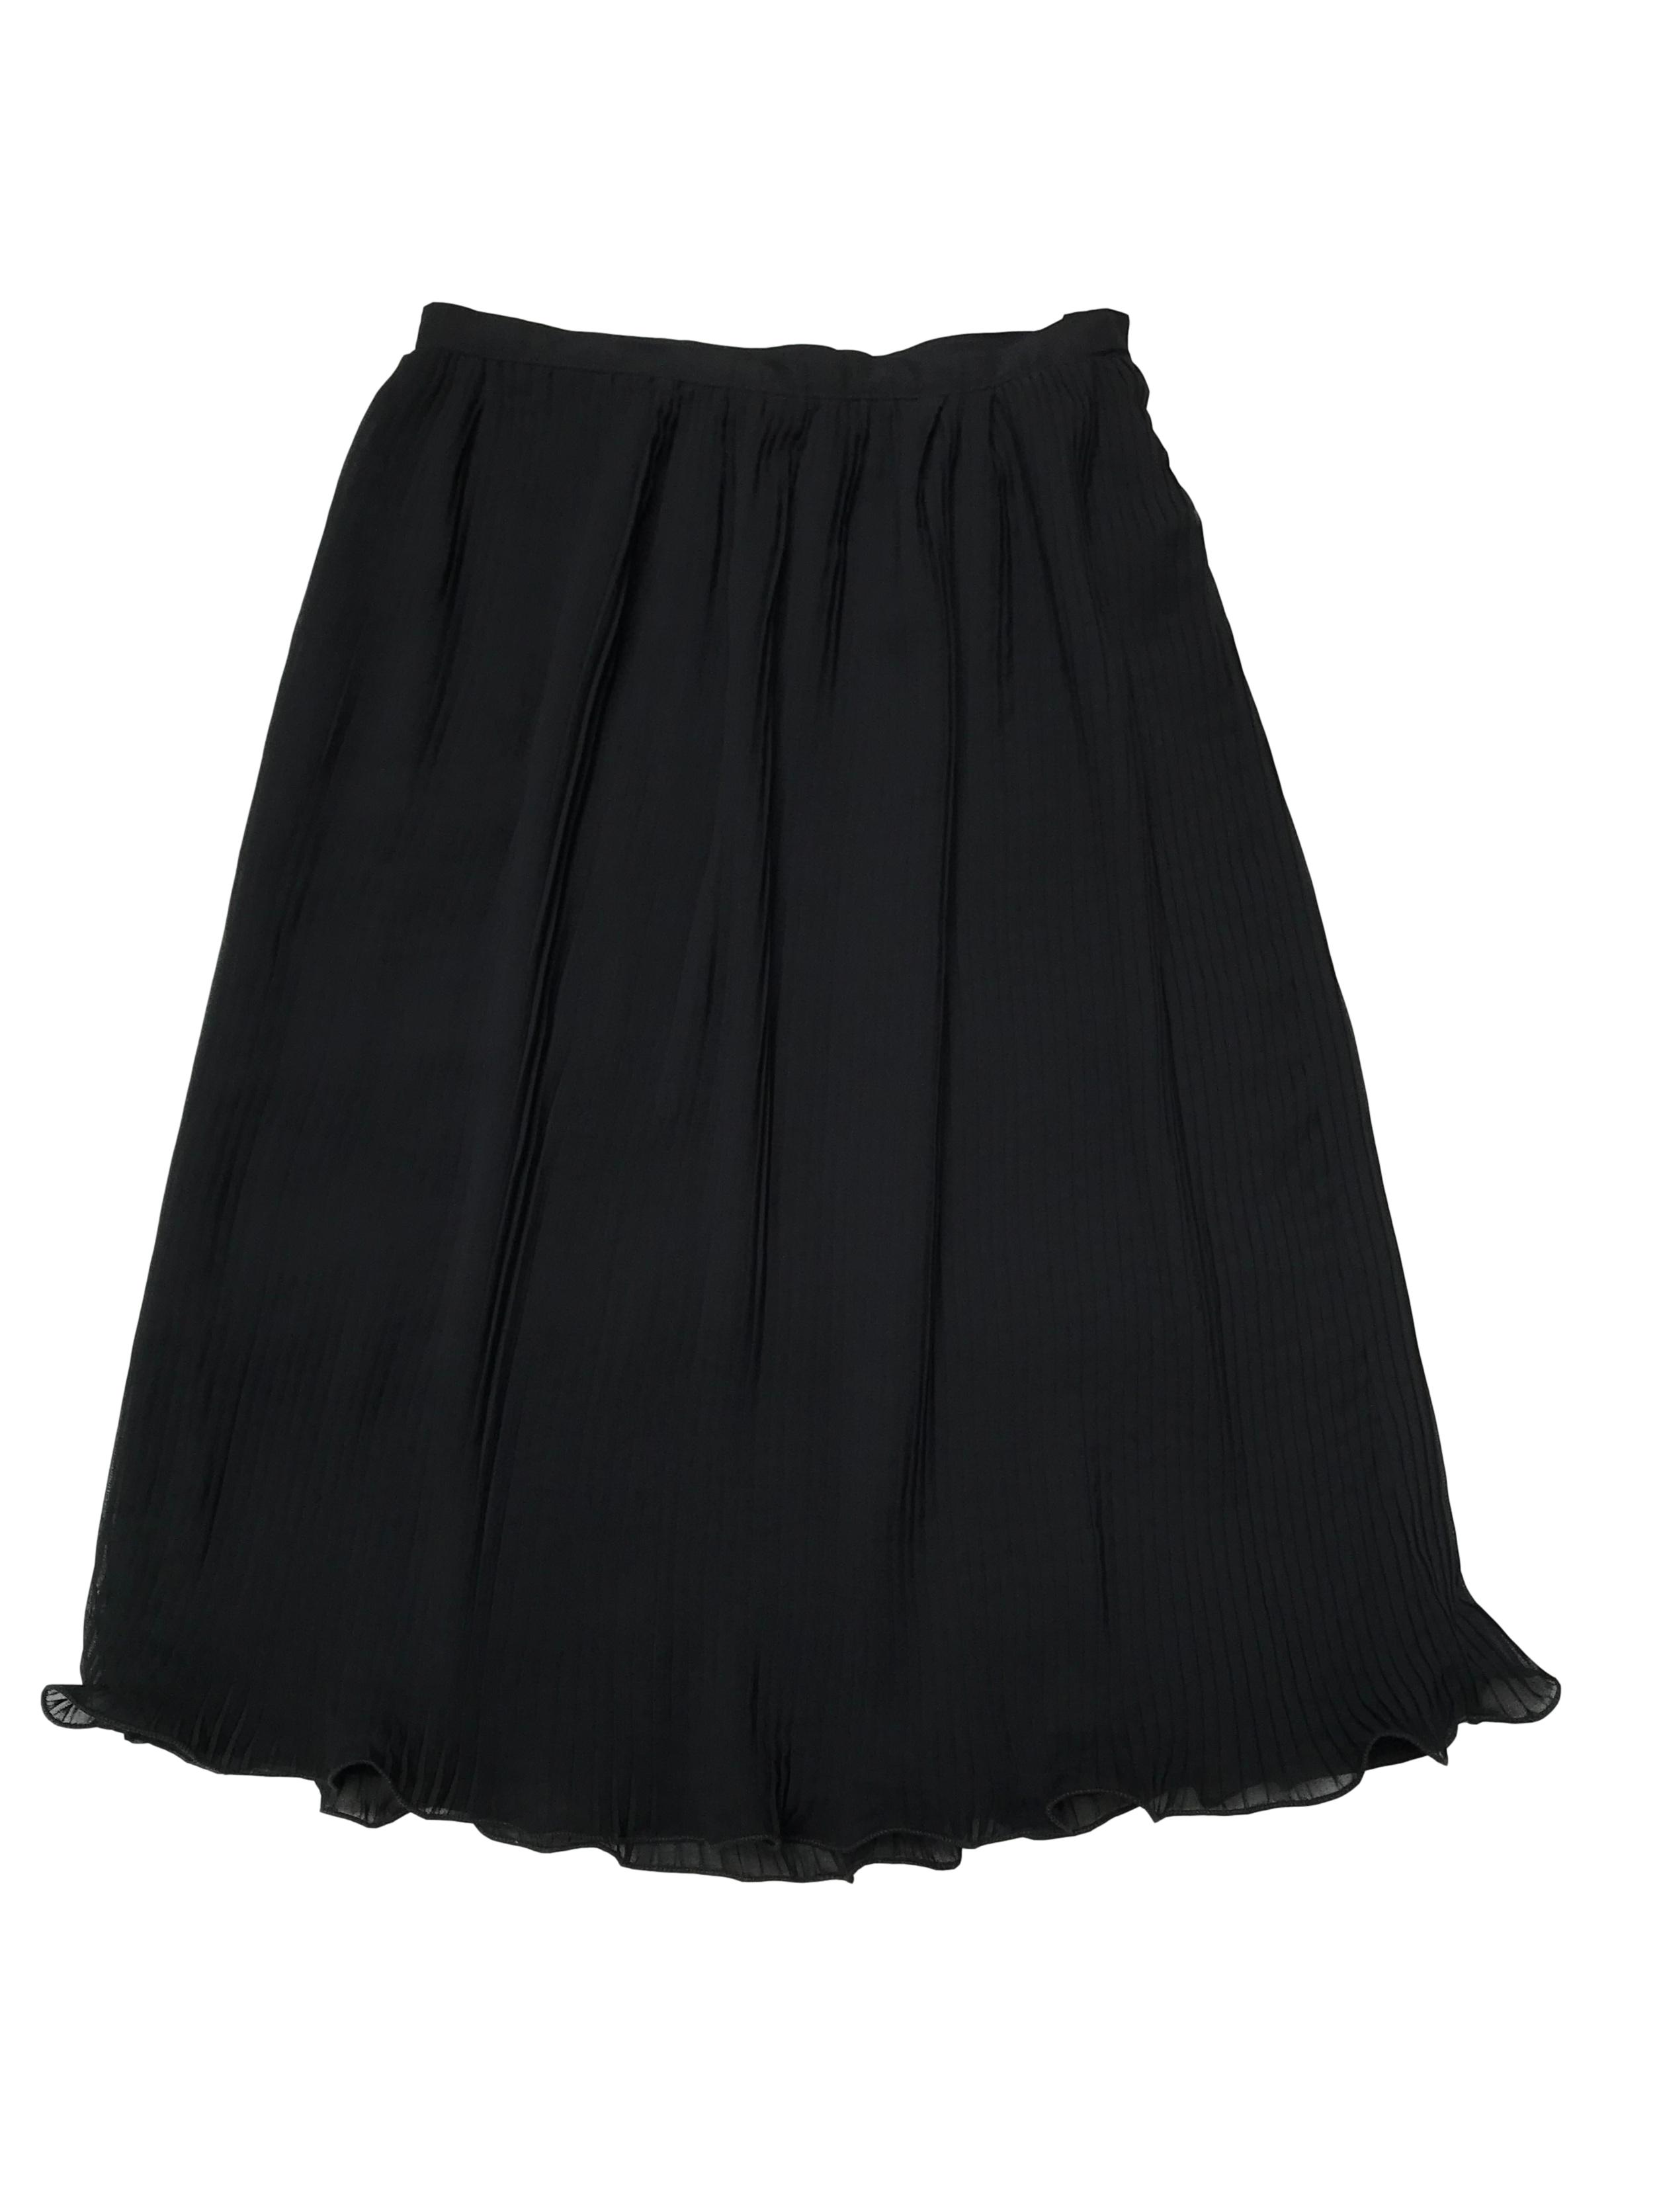 Falda midi de gasa plisada negra, forrada, cierra con broches al lado. Cintura 76 cm Largo: 75 cm